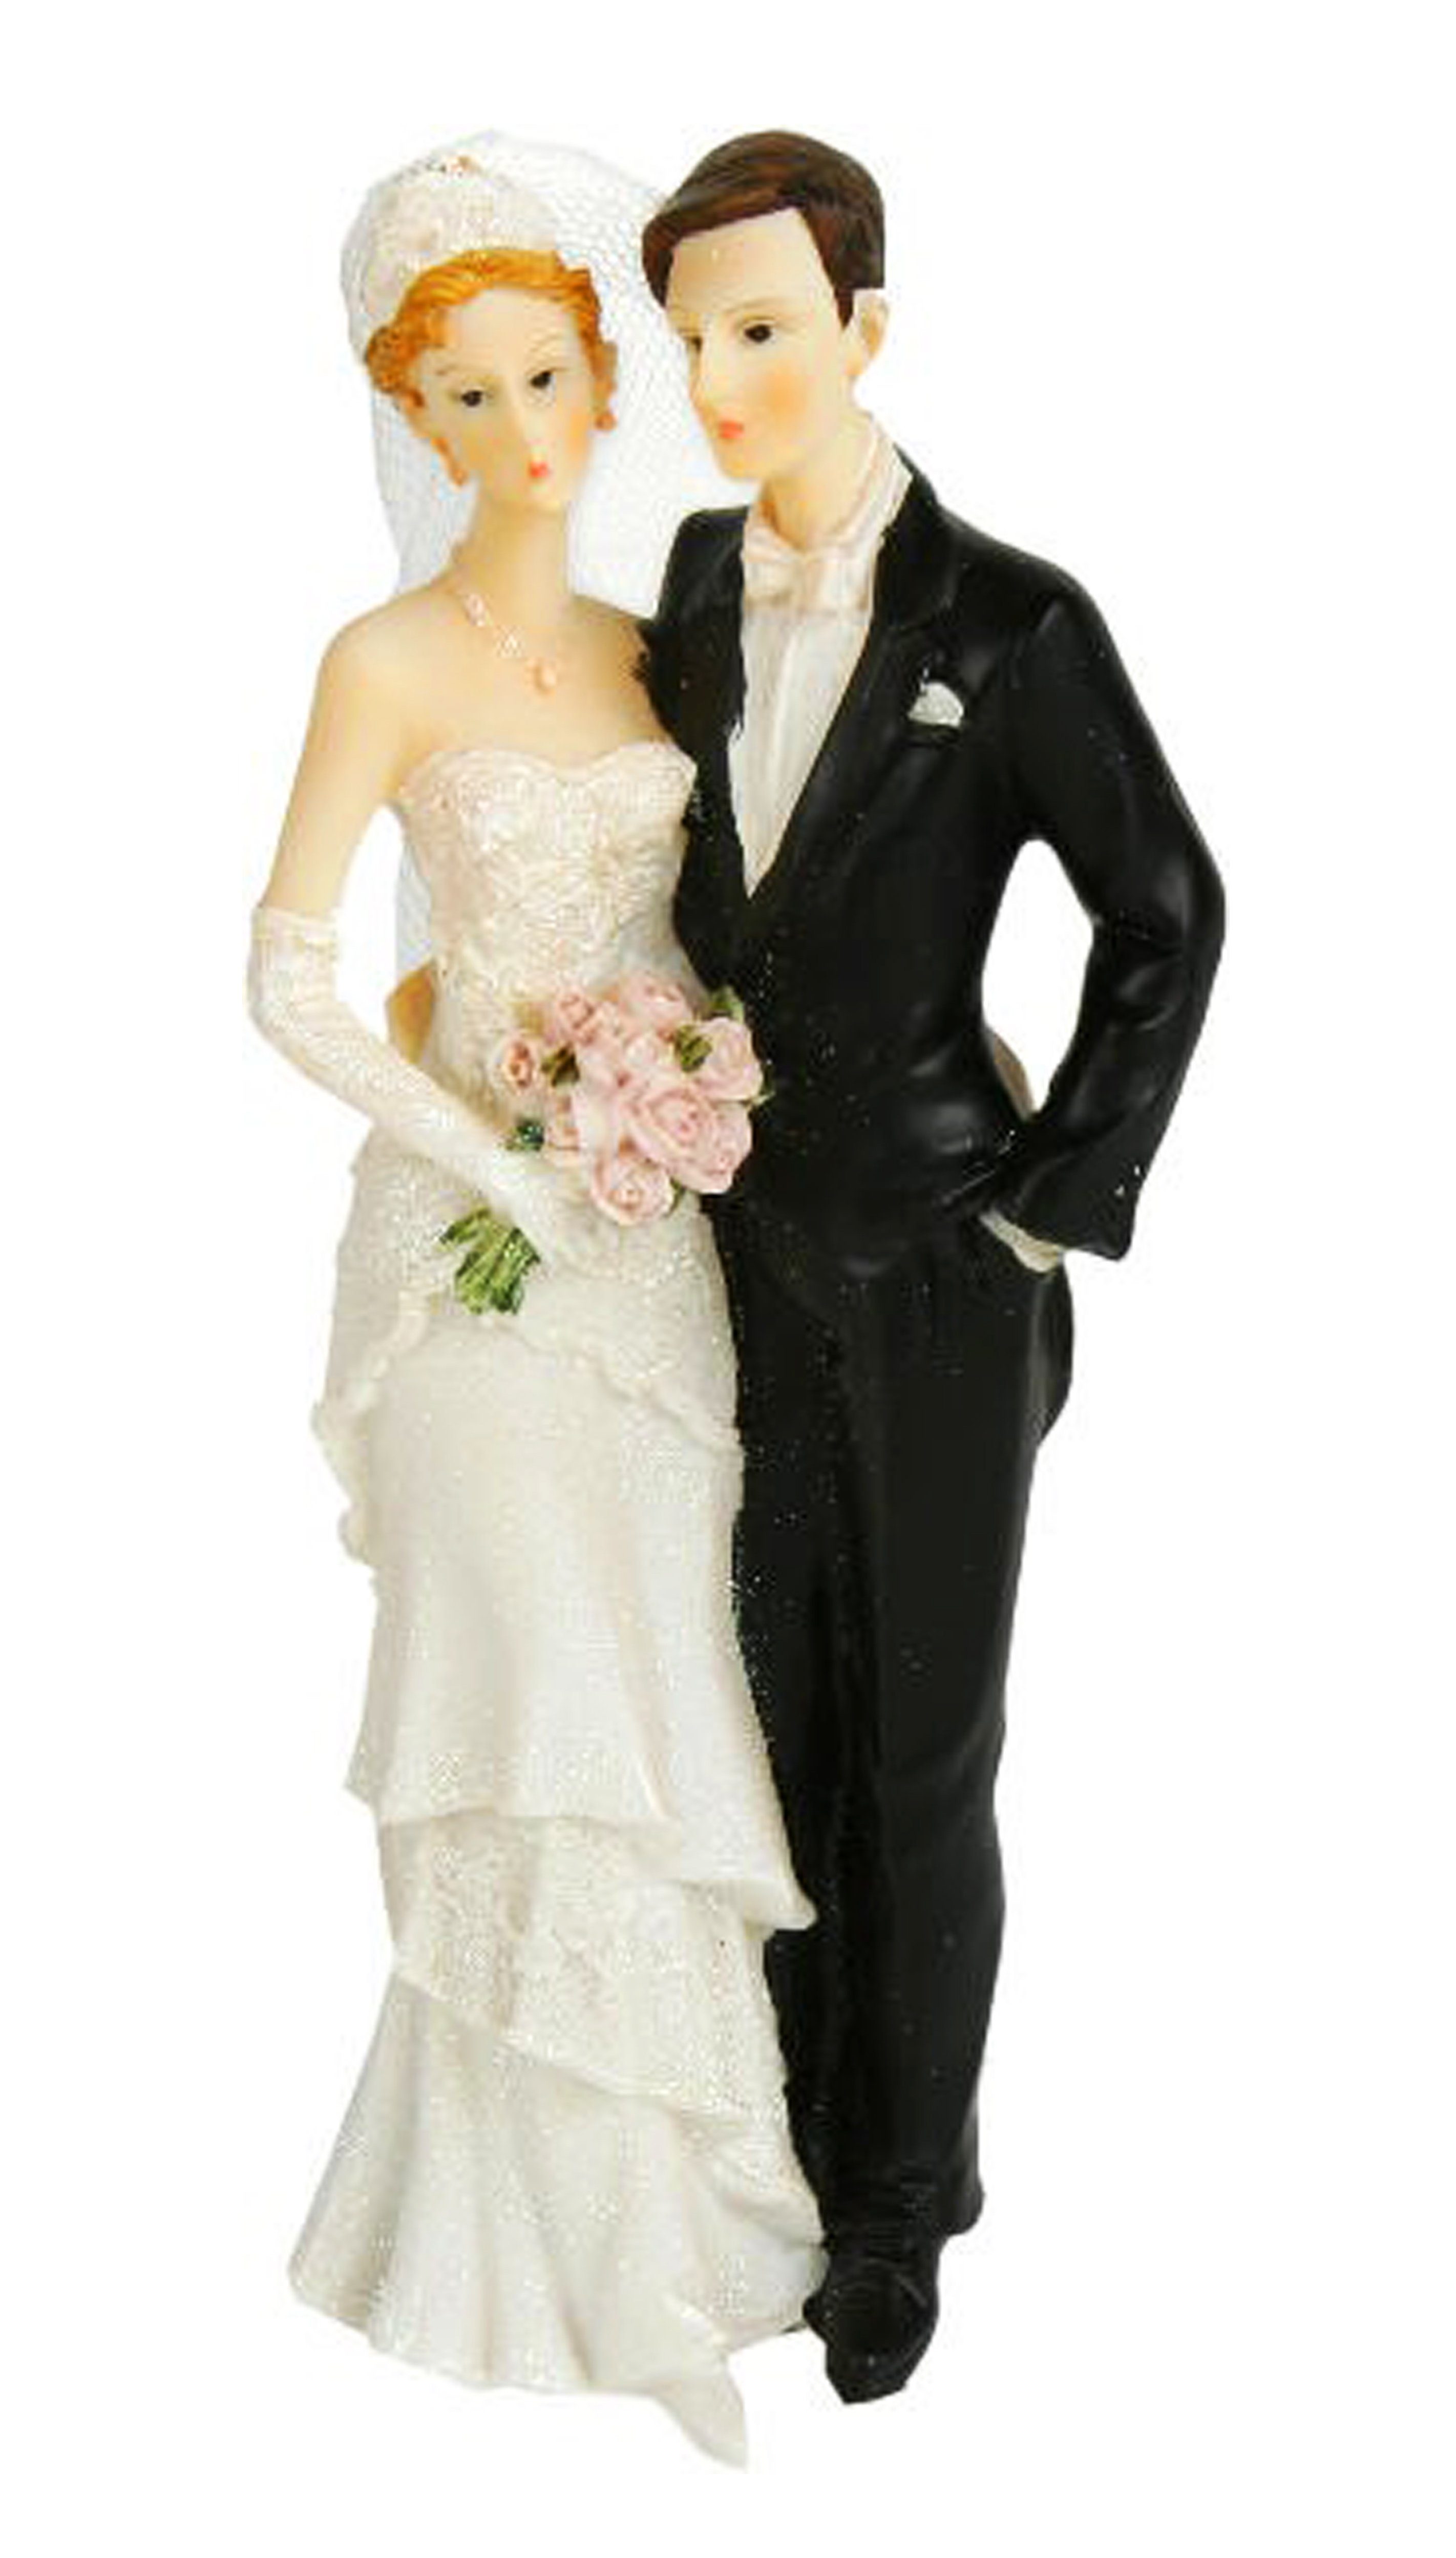 Dekofigur HOCHZEITSPAAR Tortenfigur 21cm - Tortenaufsatz Hochzeitsfigur (Hochzeitpaar Tortendeko Stehend), Brautpaar Deko